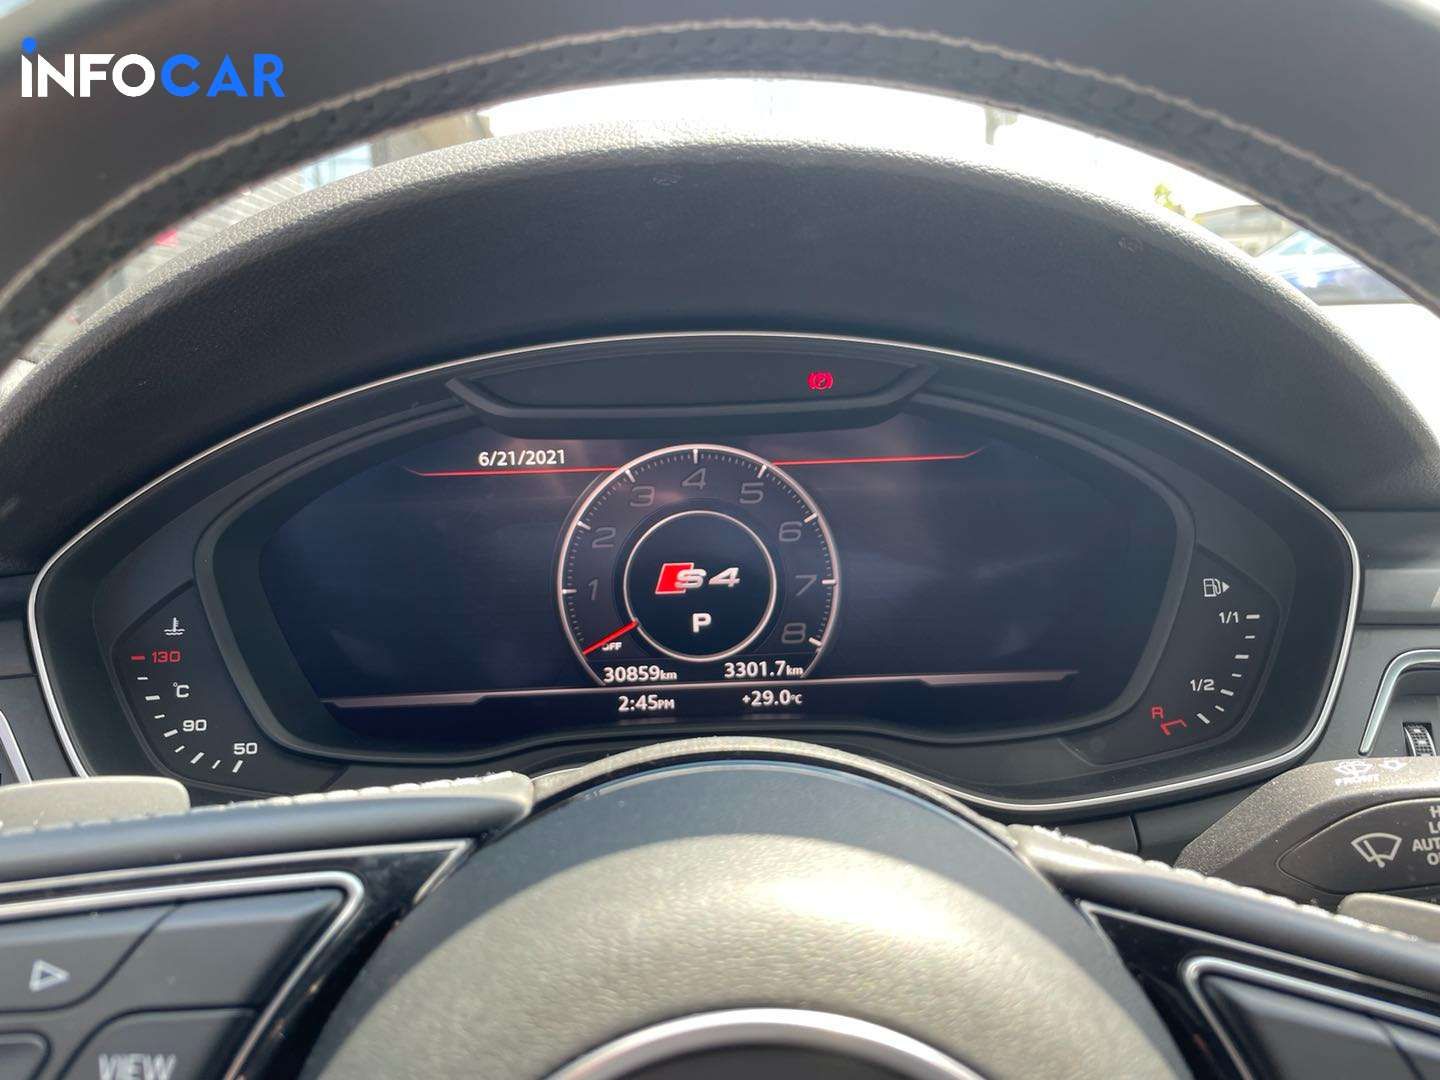 2018 Audi S4 technik - INFOCAR - Toronto Auto Trading Platform